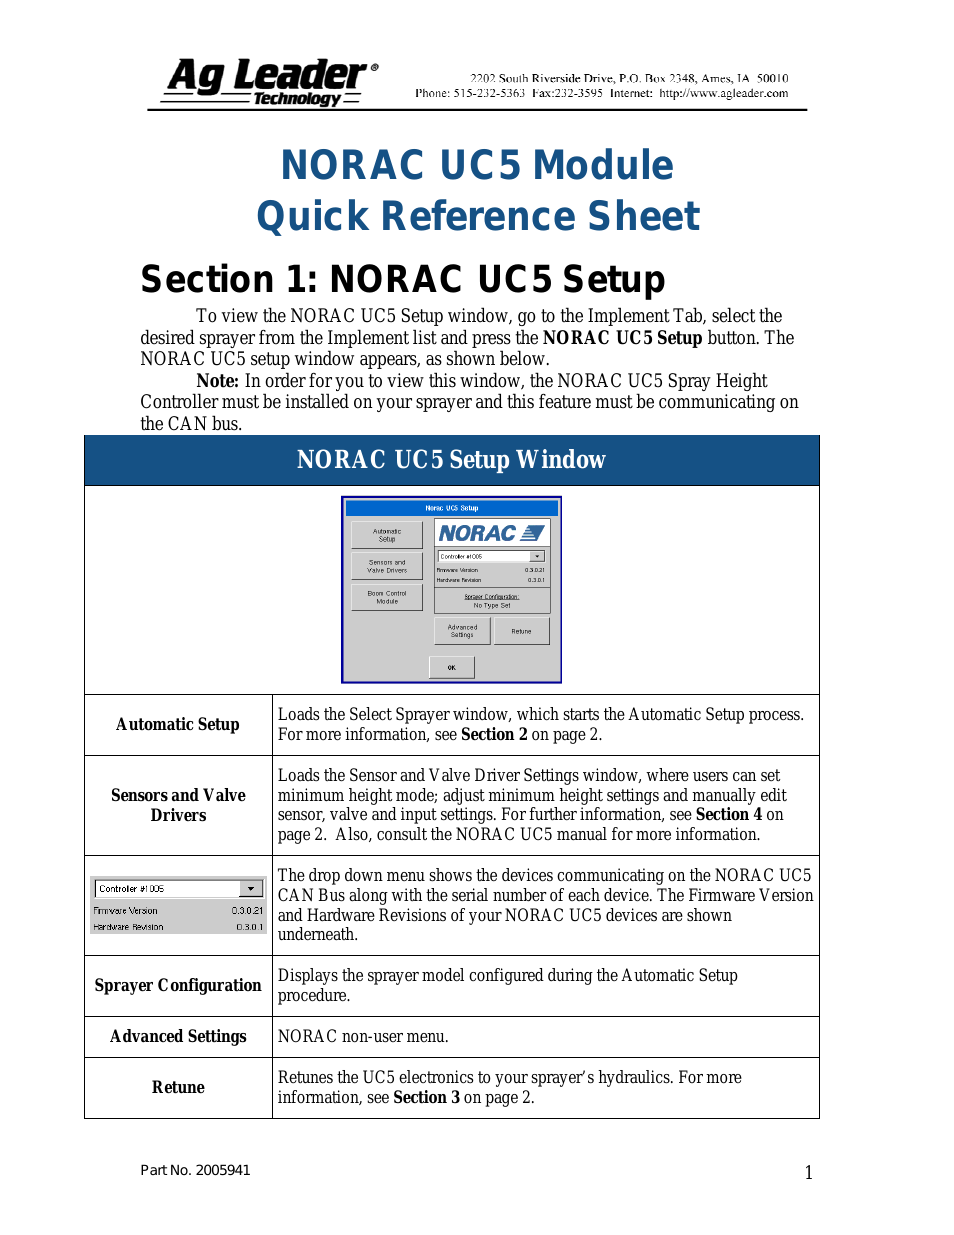 InSight NORAC UC5